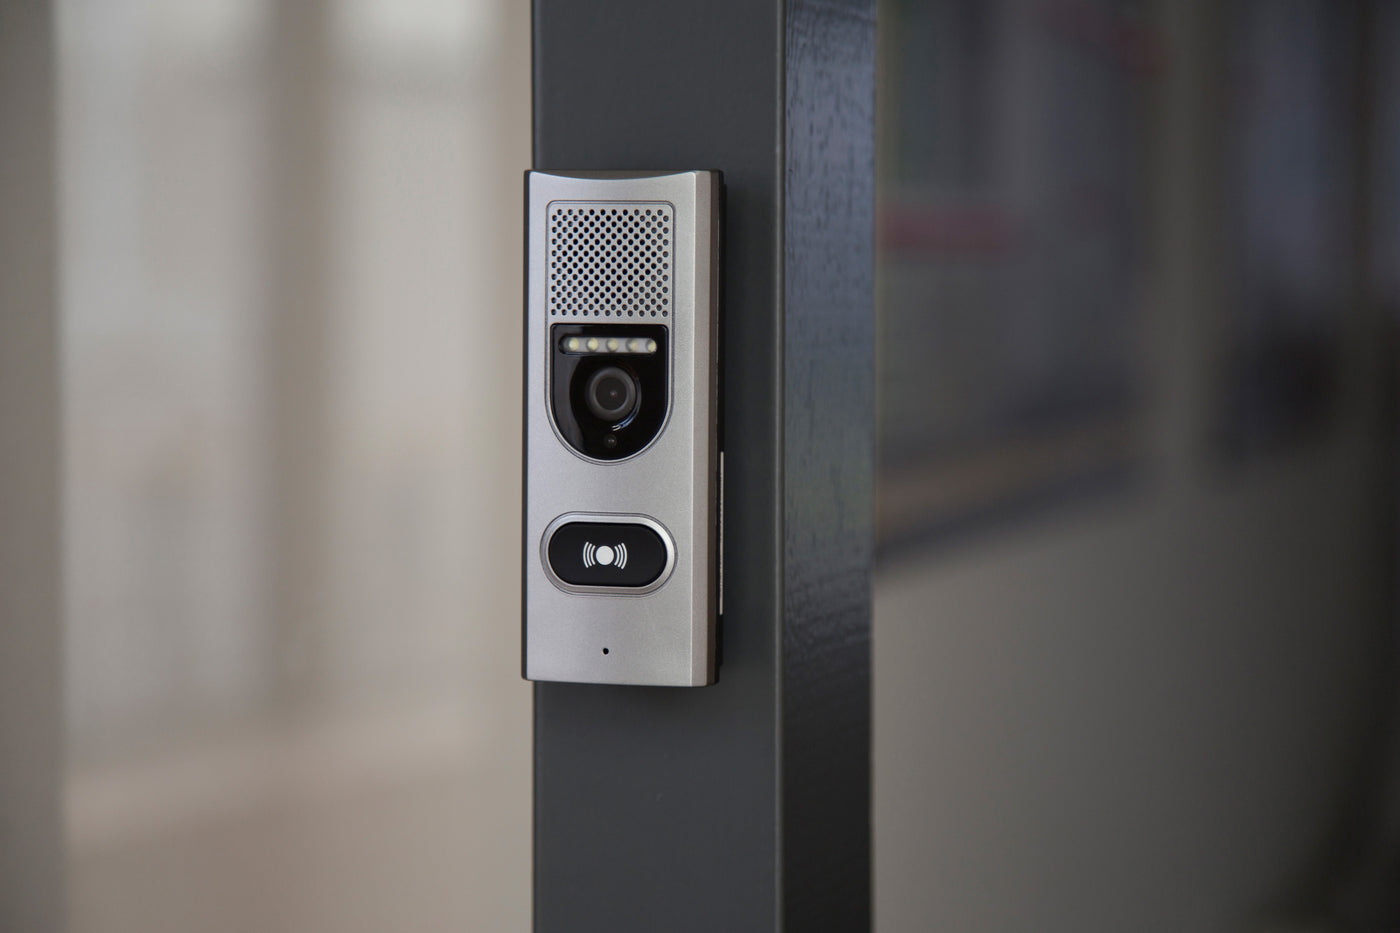 Alecto ADI-250 - Door intercom with camera and 3.5" color display, white/silver